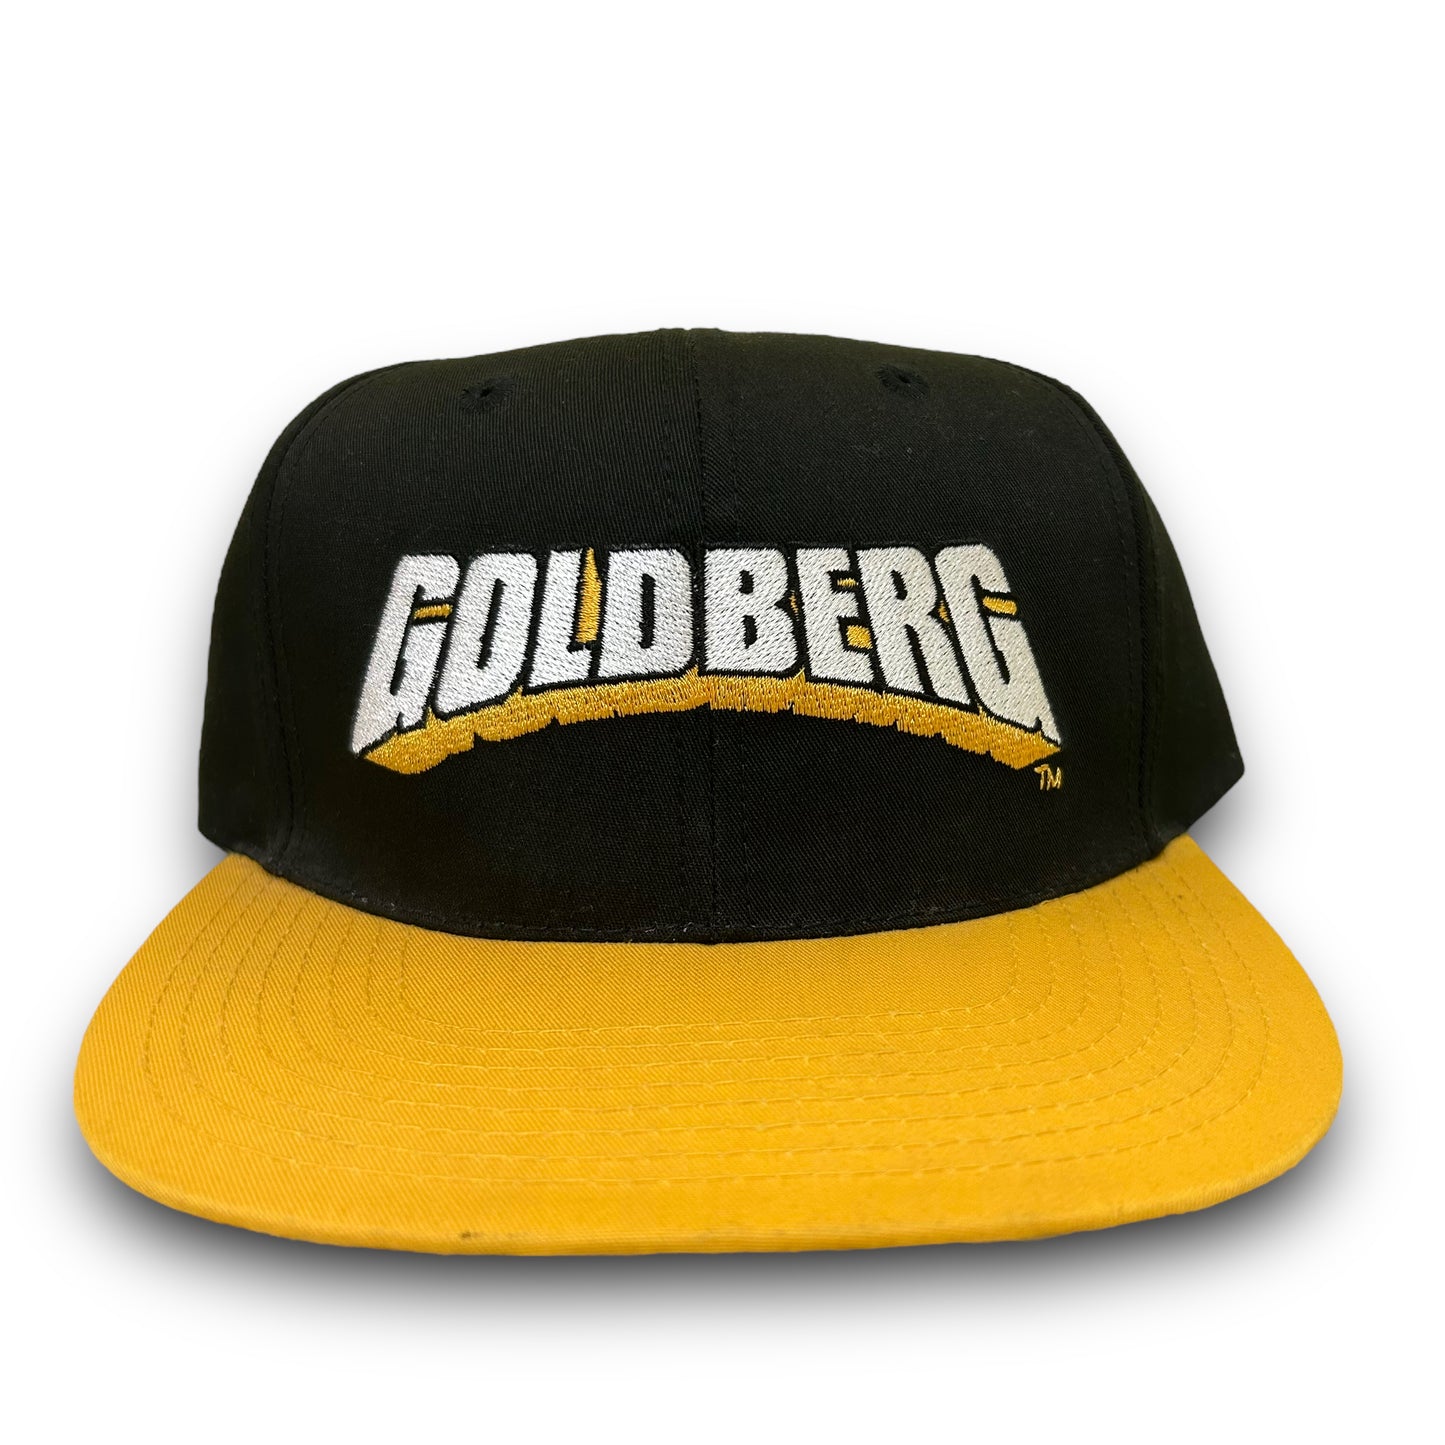 NWOT Vintage 1990s WCW/NWO Wrestling Goldberg Embroidered Black Snapback Hat